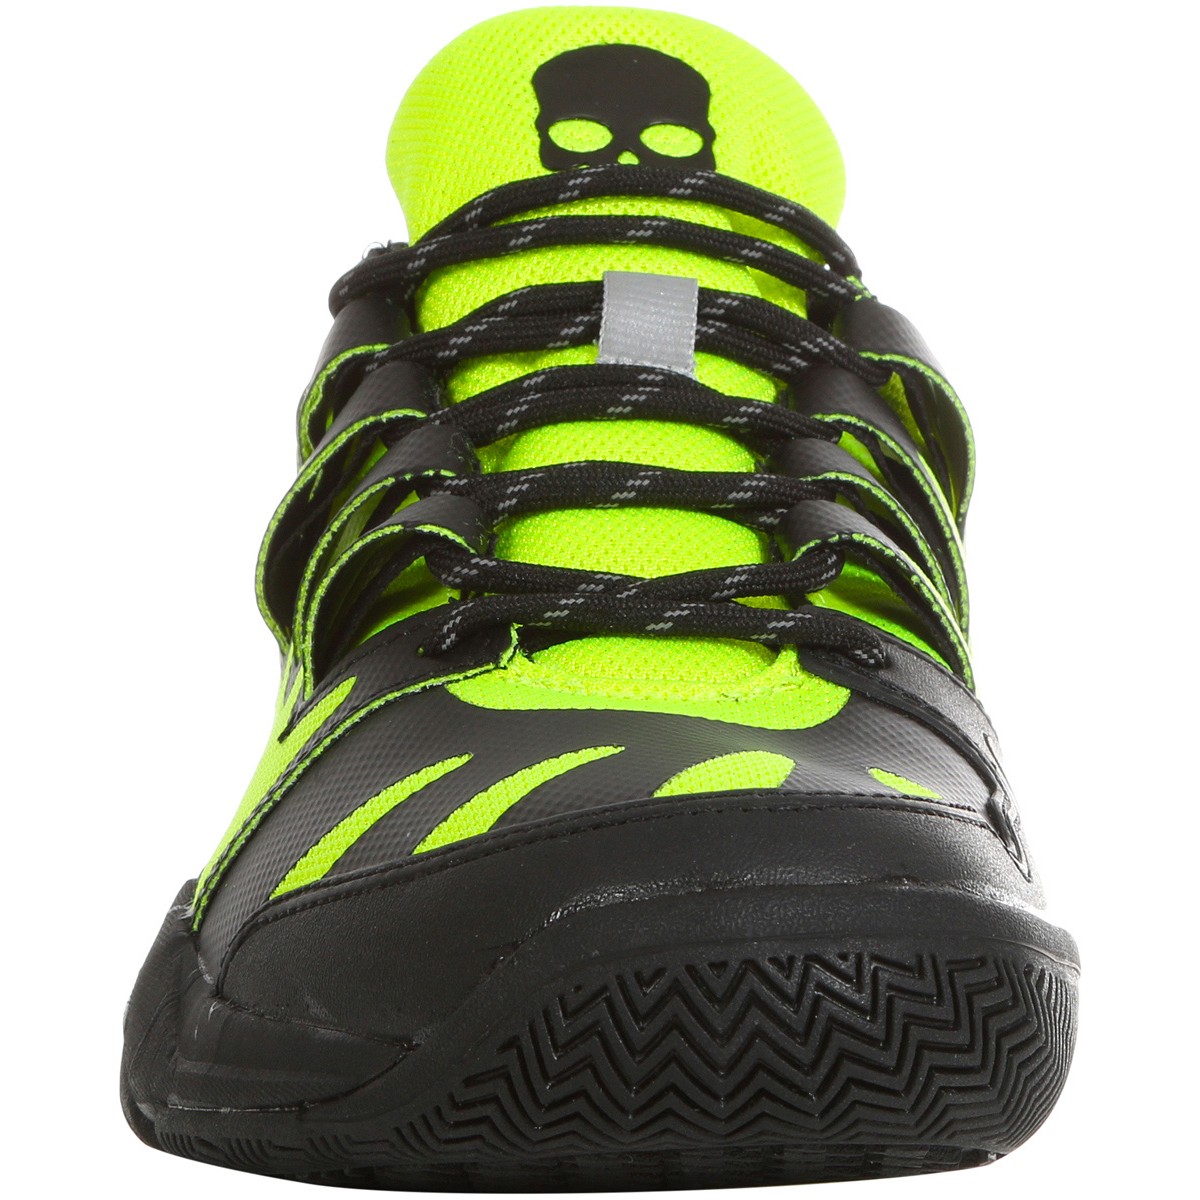 Men’s shoes Hydrogen Tennis Shoes - fluo yellow | Tennis Zone | Tennis Shop